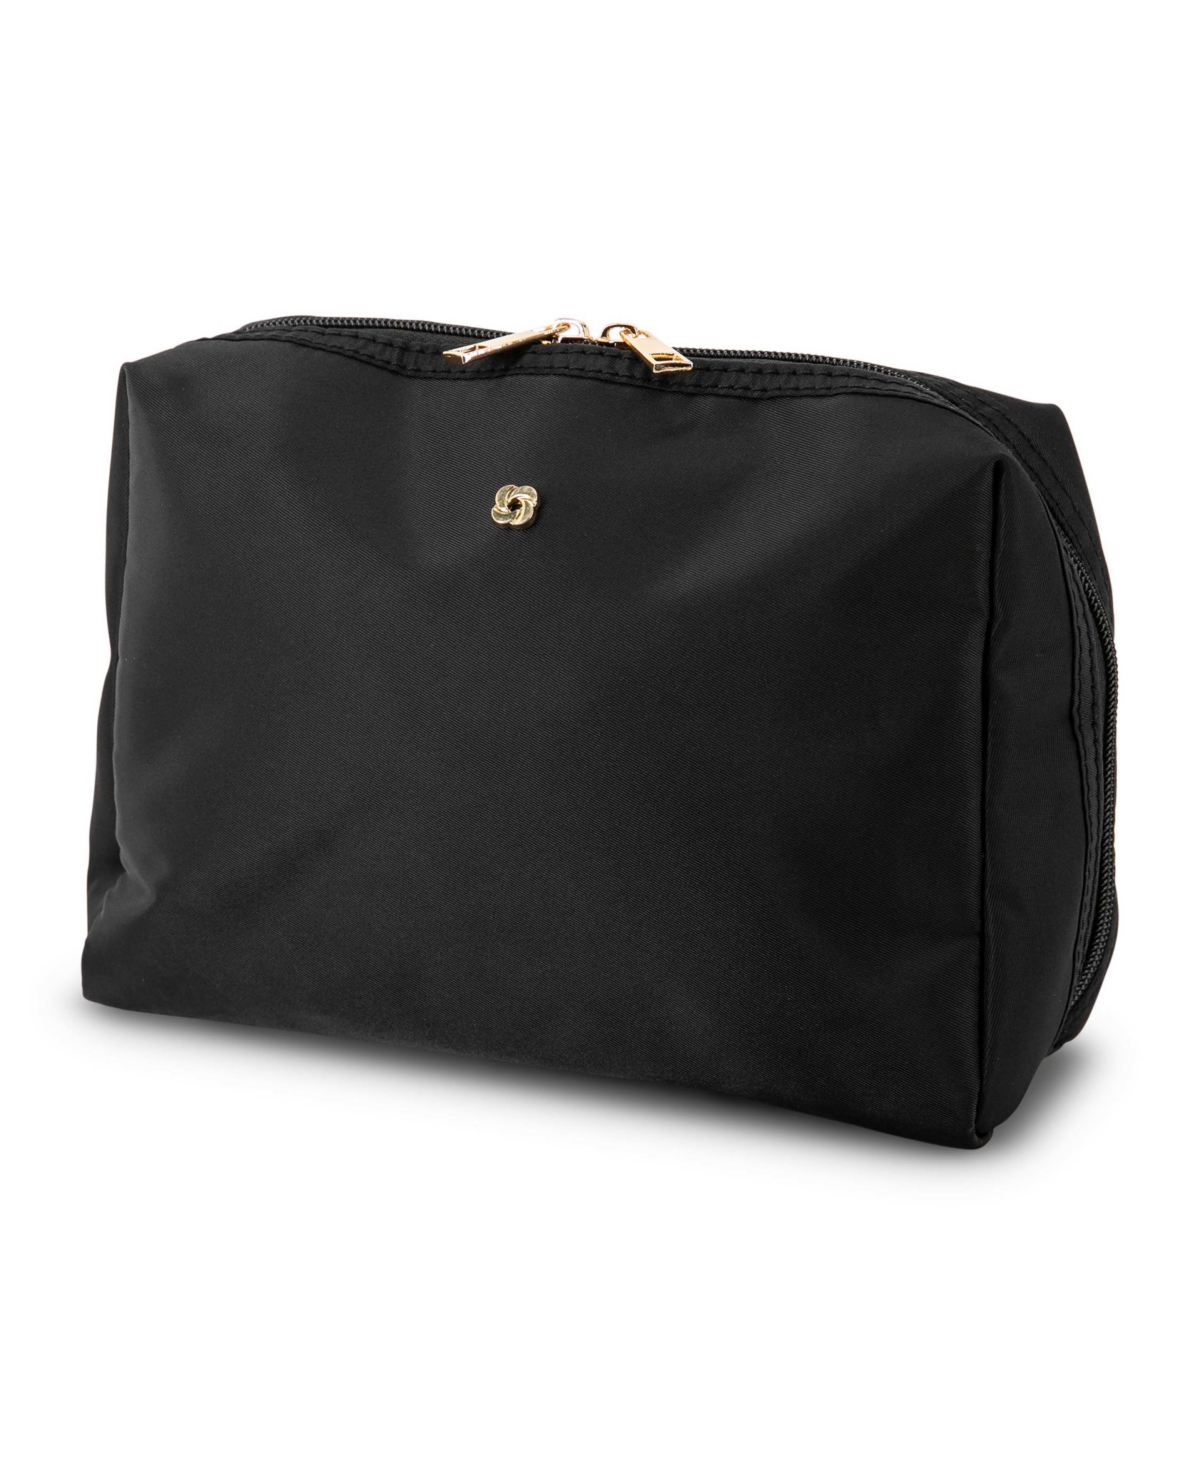 Samsonite Companion Everyday Travel Kit Bag In Black